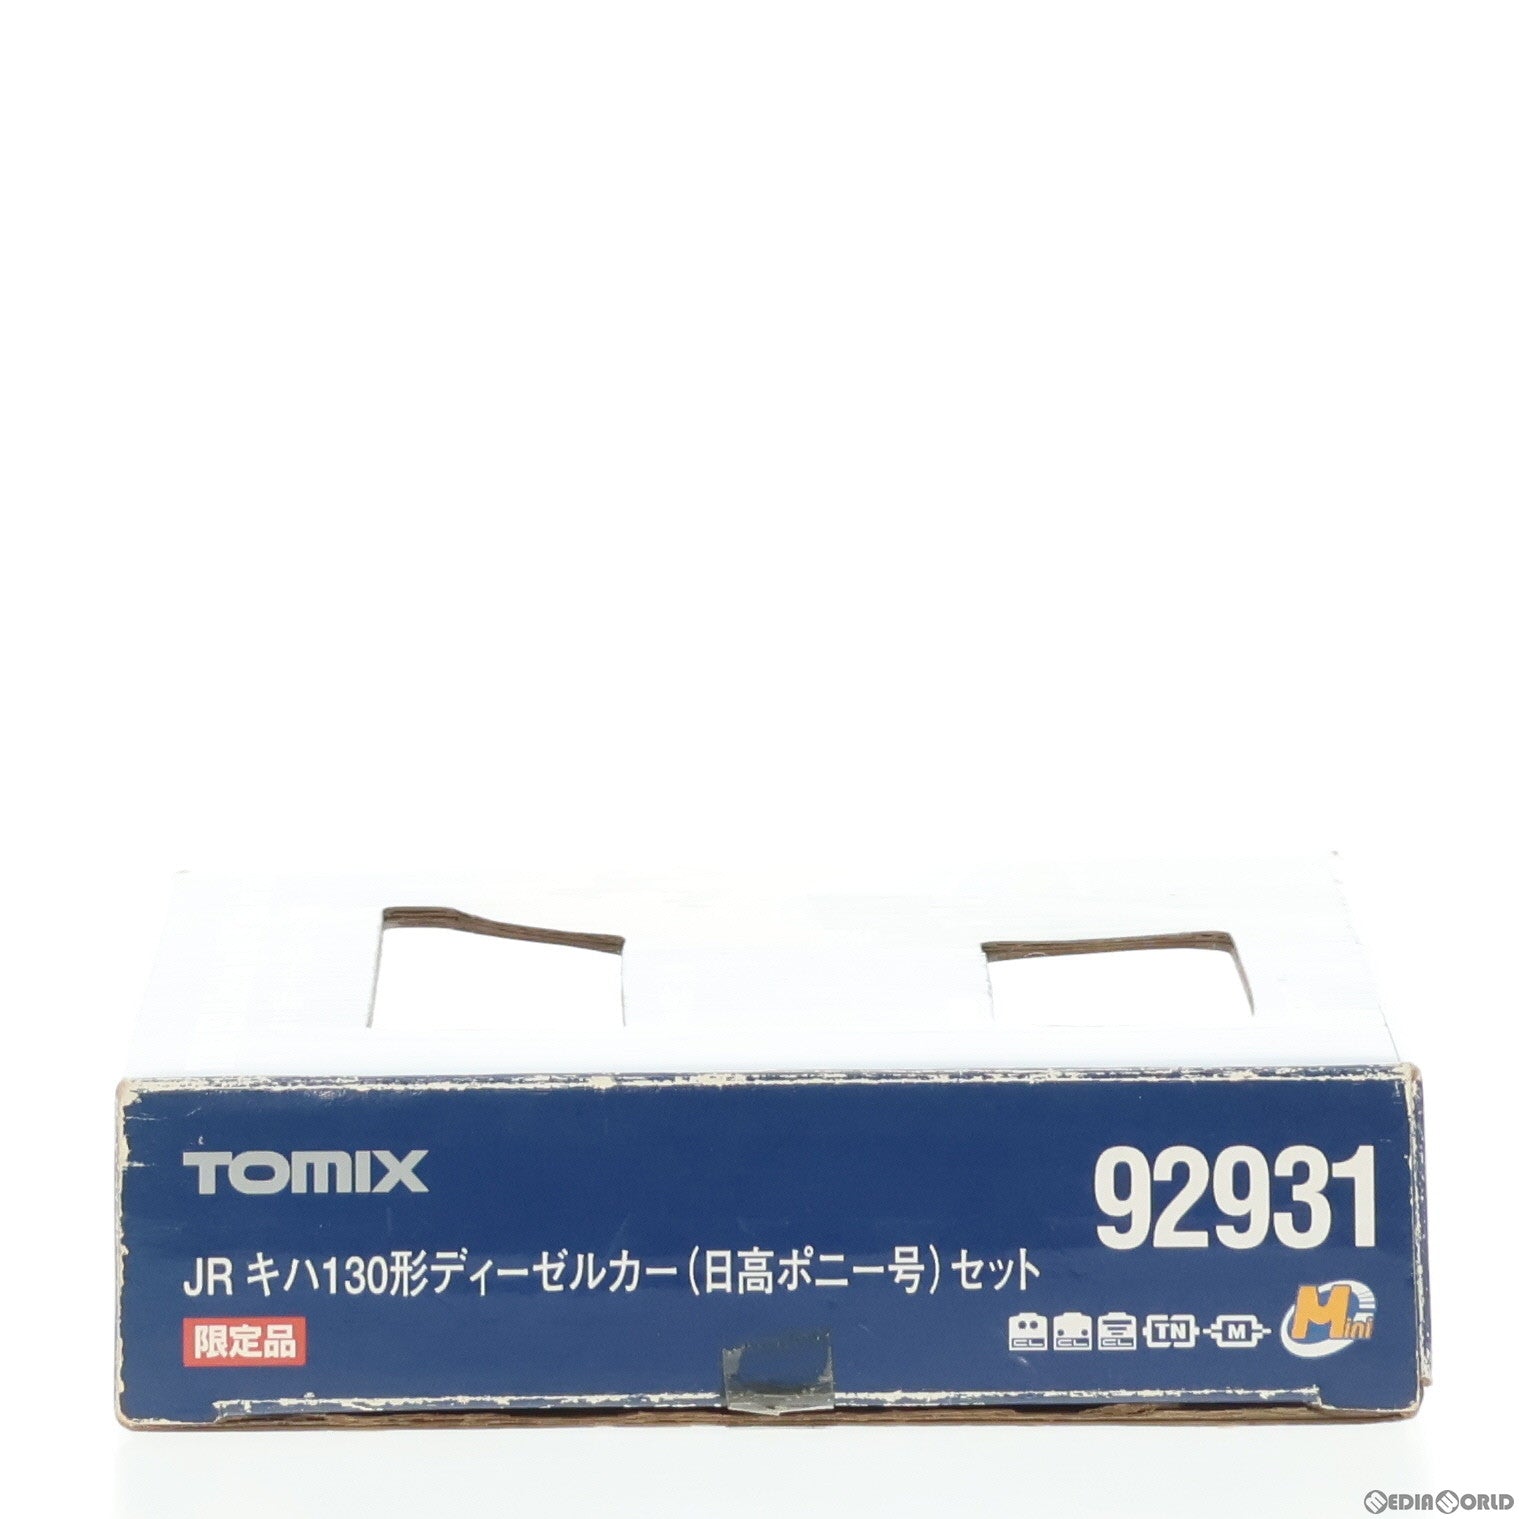 【中古即納】[RWM]92931 限定品 JR キハ130形ディーゼルカー(日高ポニー号) 2両セット(動力付き) Nゲージ 鉄道模型 TOMIX(トミックス)(20080731)